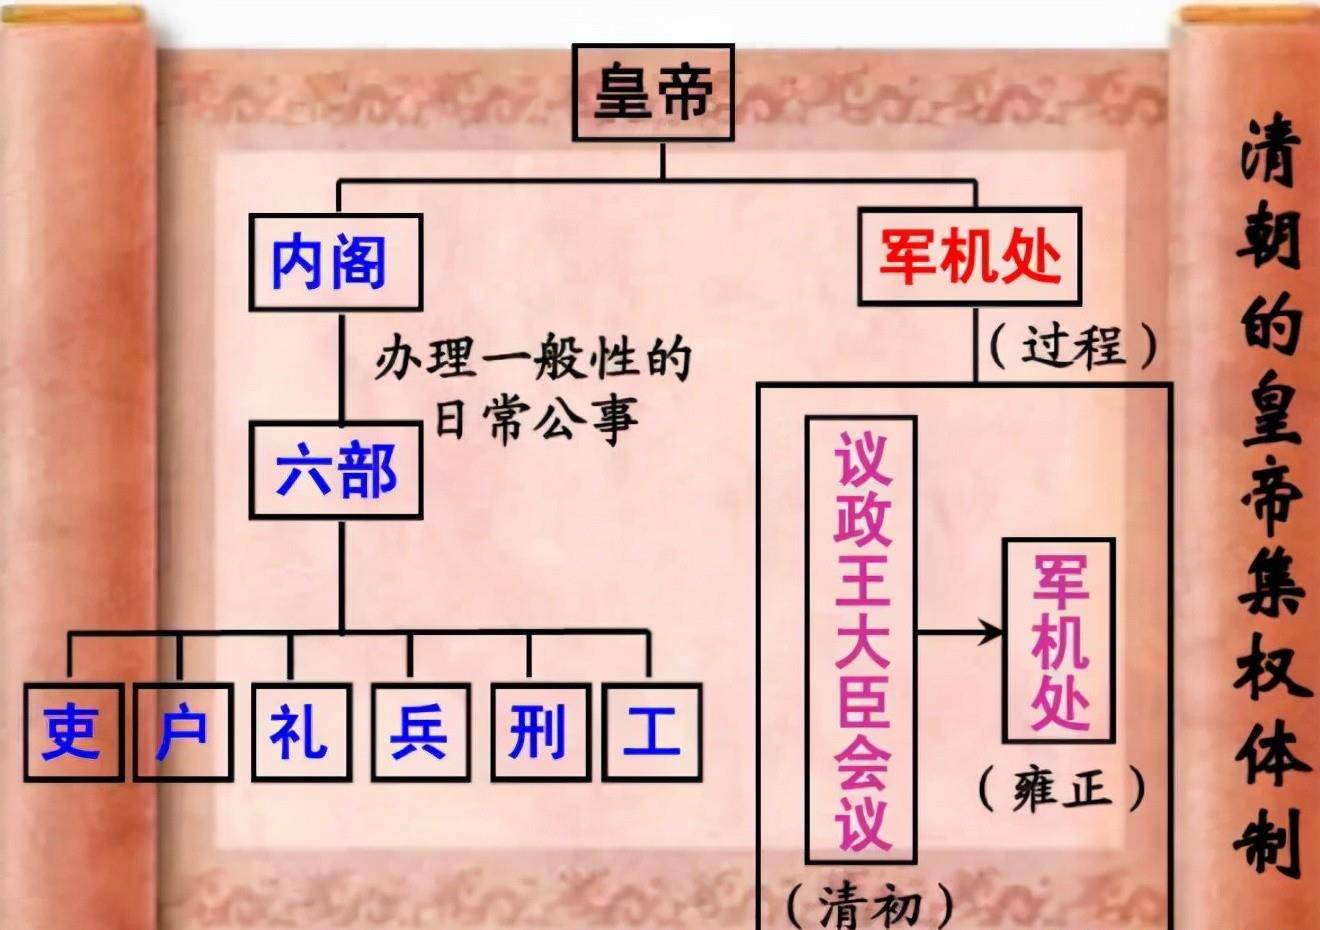 清朝组织架构图片